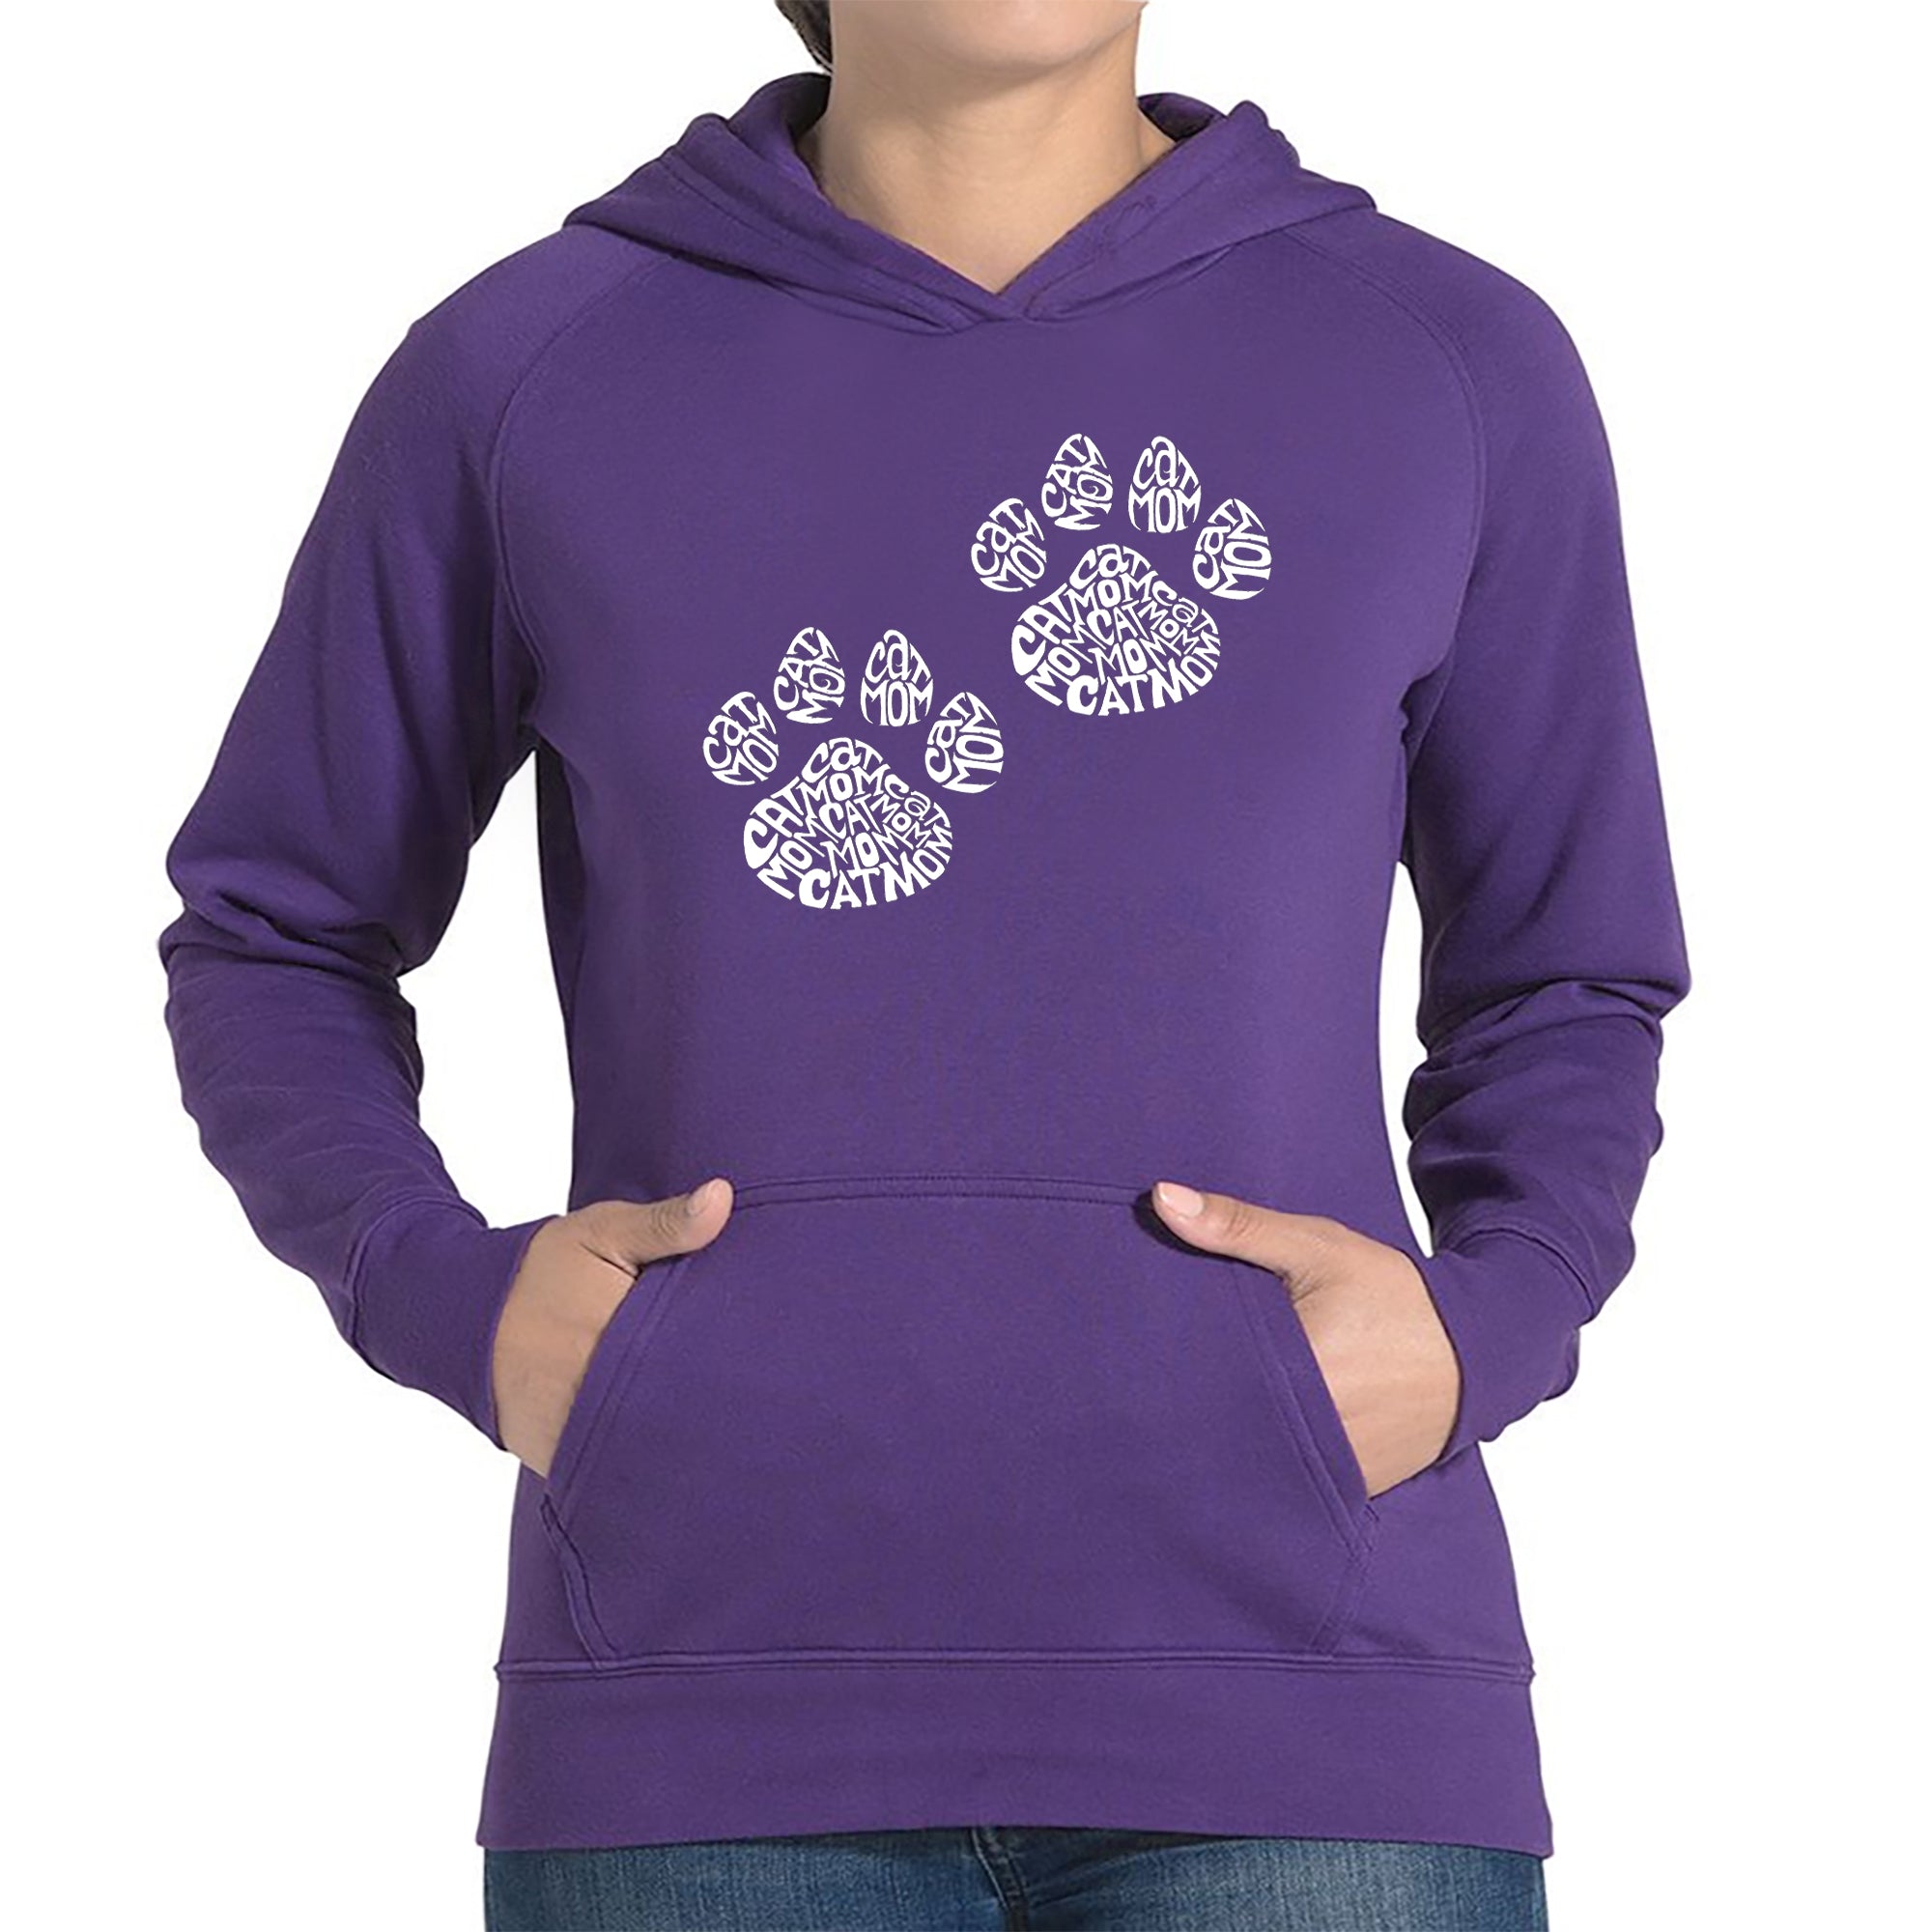 Cat Mom - Women's Word Art Hooded Sweatshirt - Purple - XXXX-Large